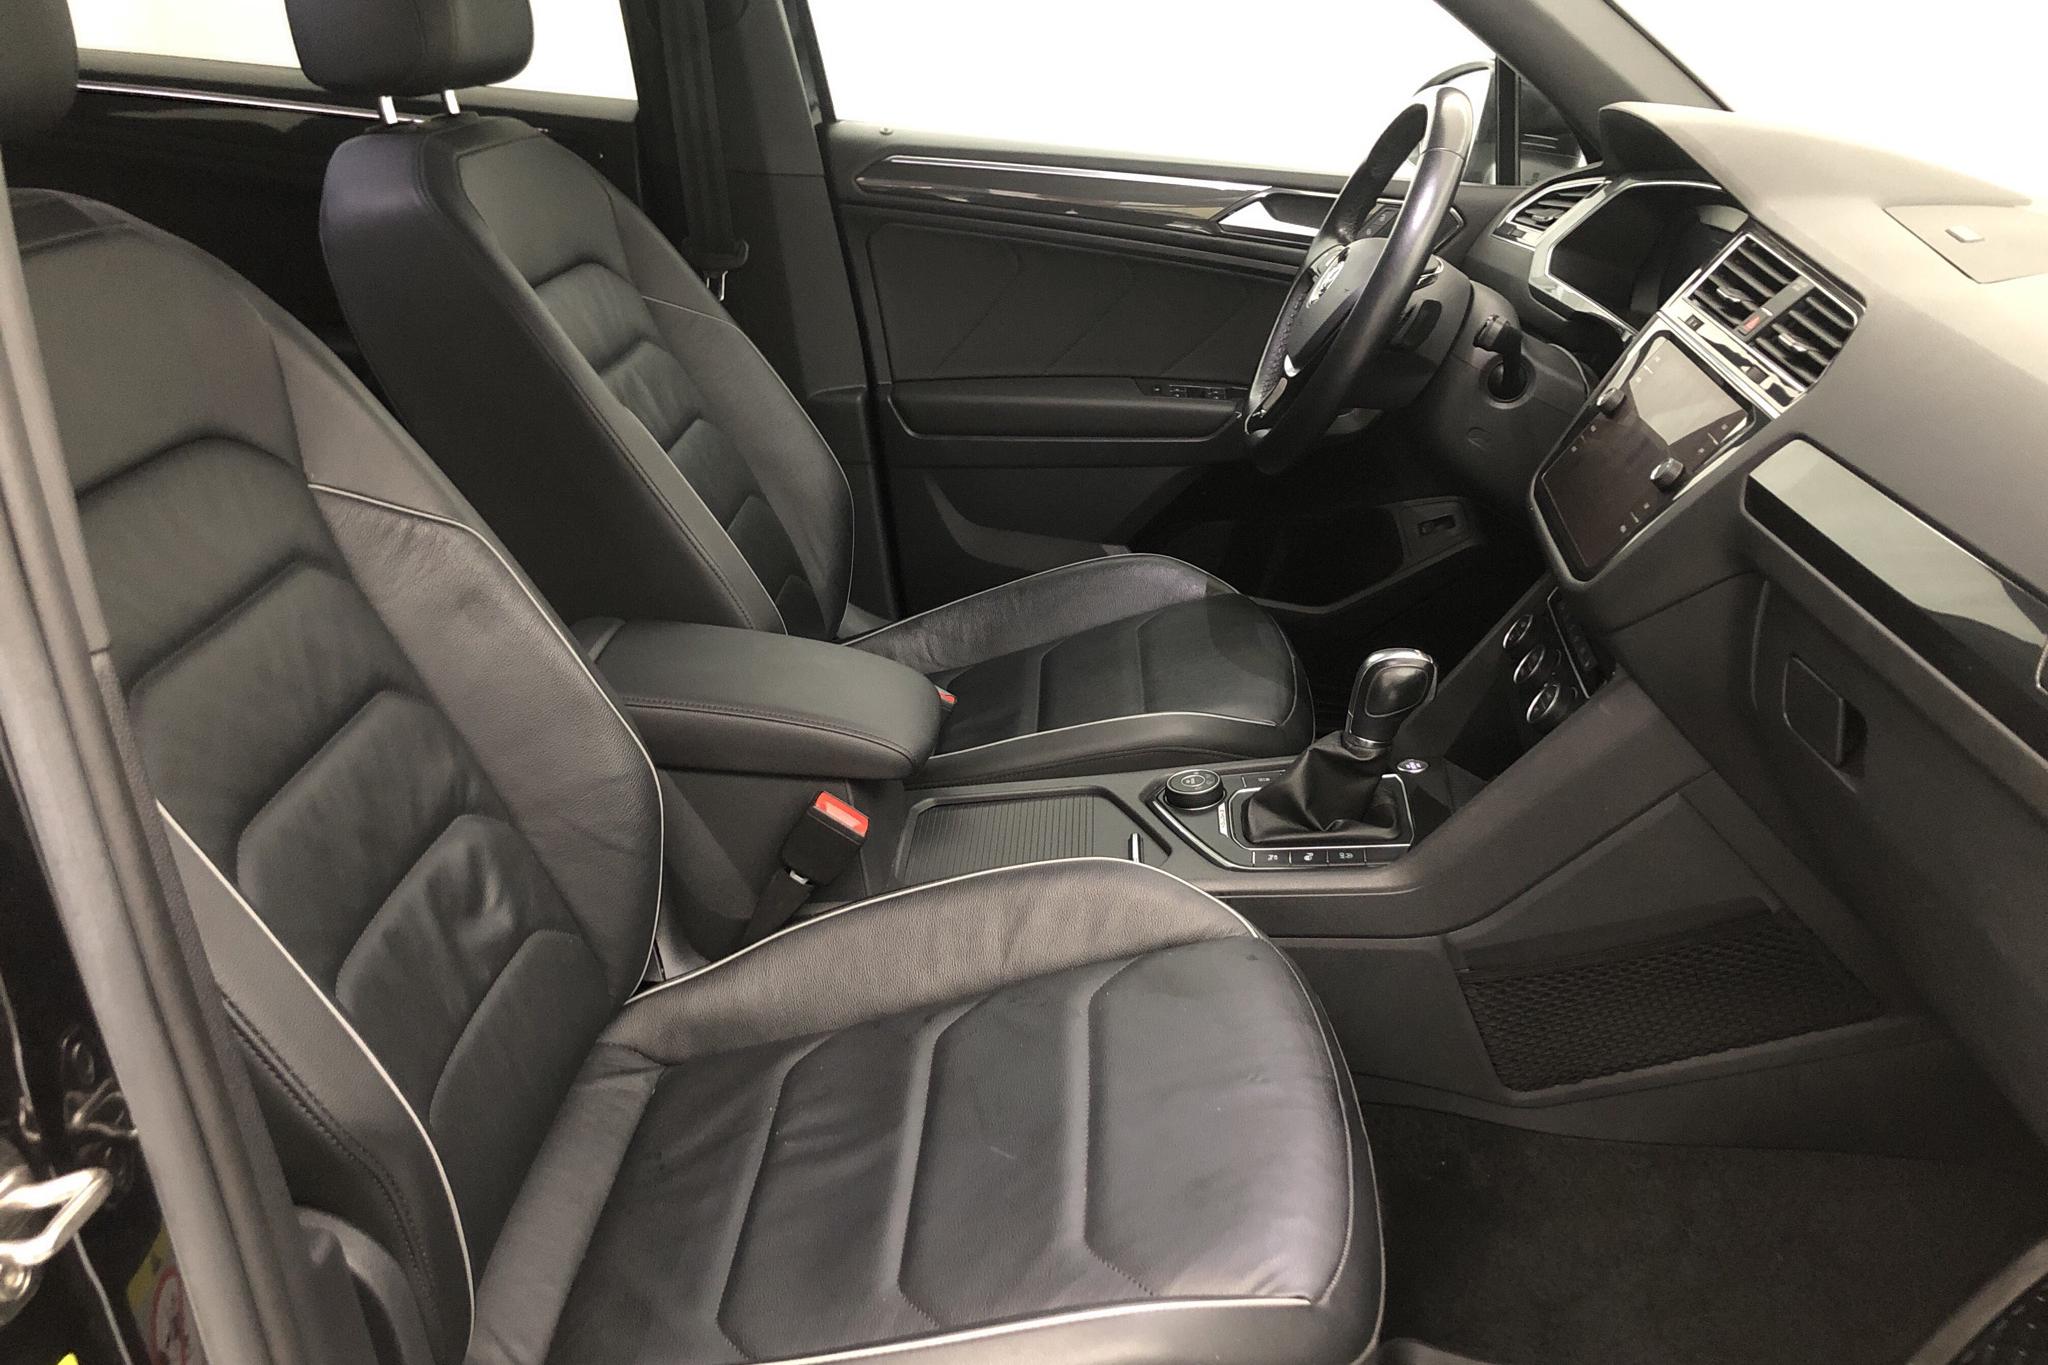 VW Tiguan Allspace 2.0 TDI 4MOTION (190hk) - 79 010 km - Automatic - black - 2018